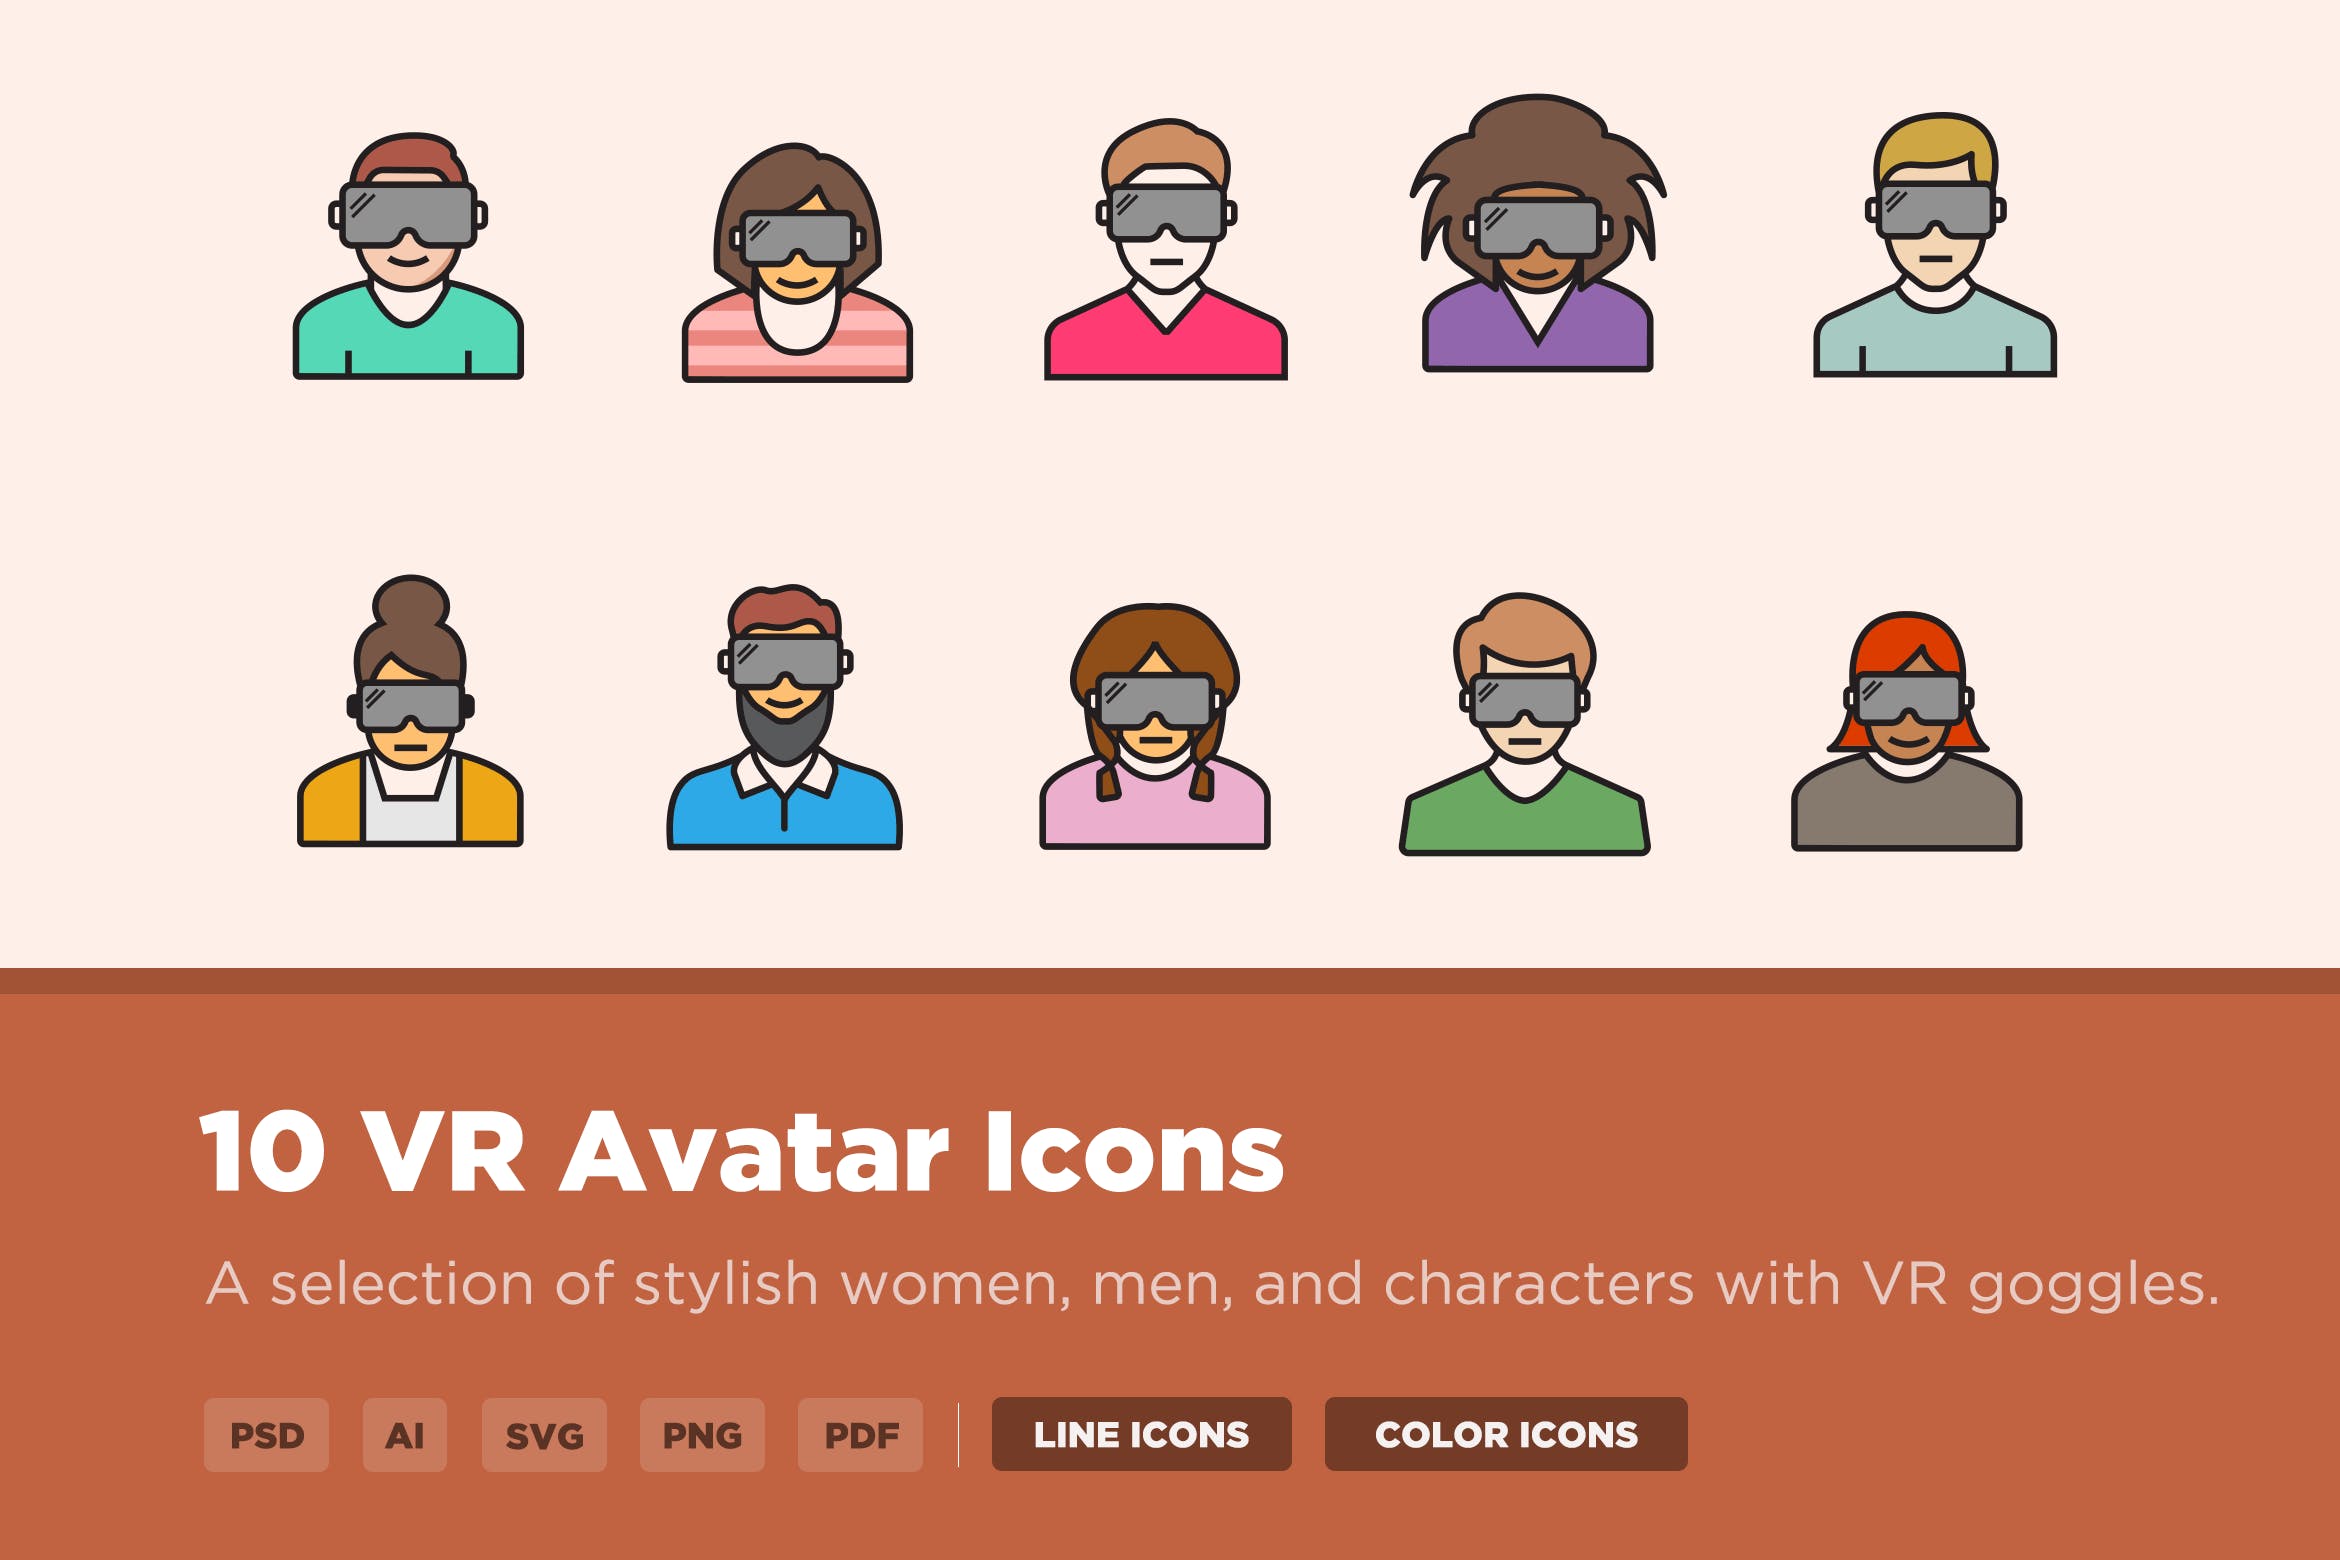 10枚VR虚拟角色头像矢量图标 10 VR Avatar Icons插图